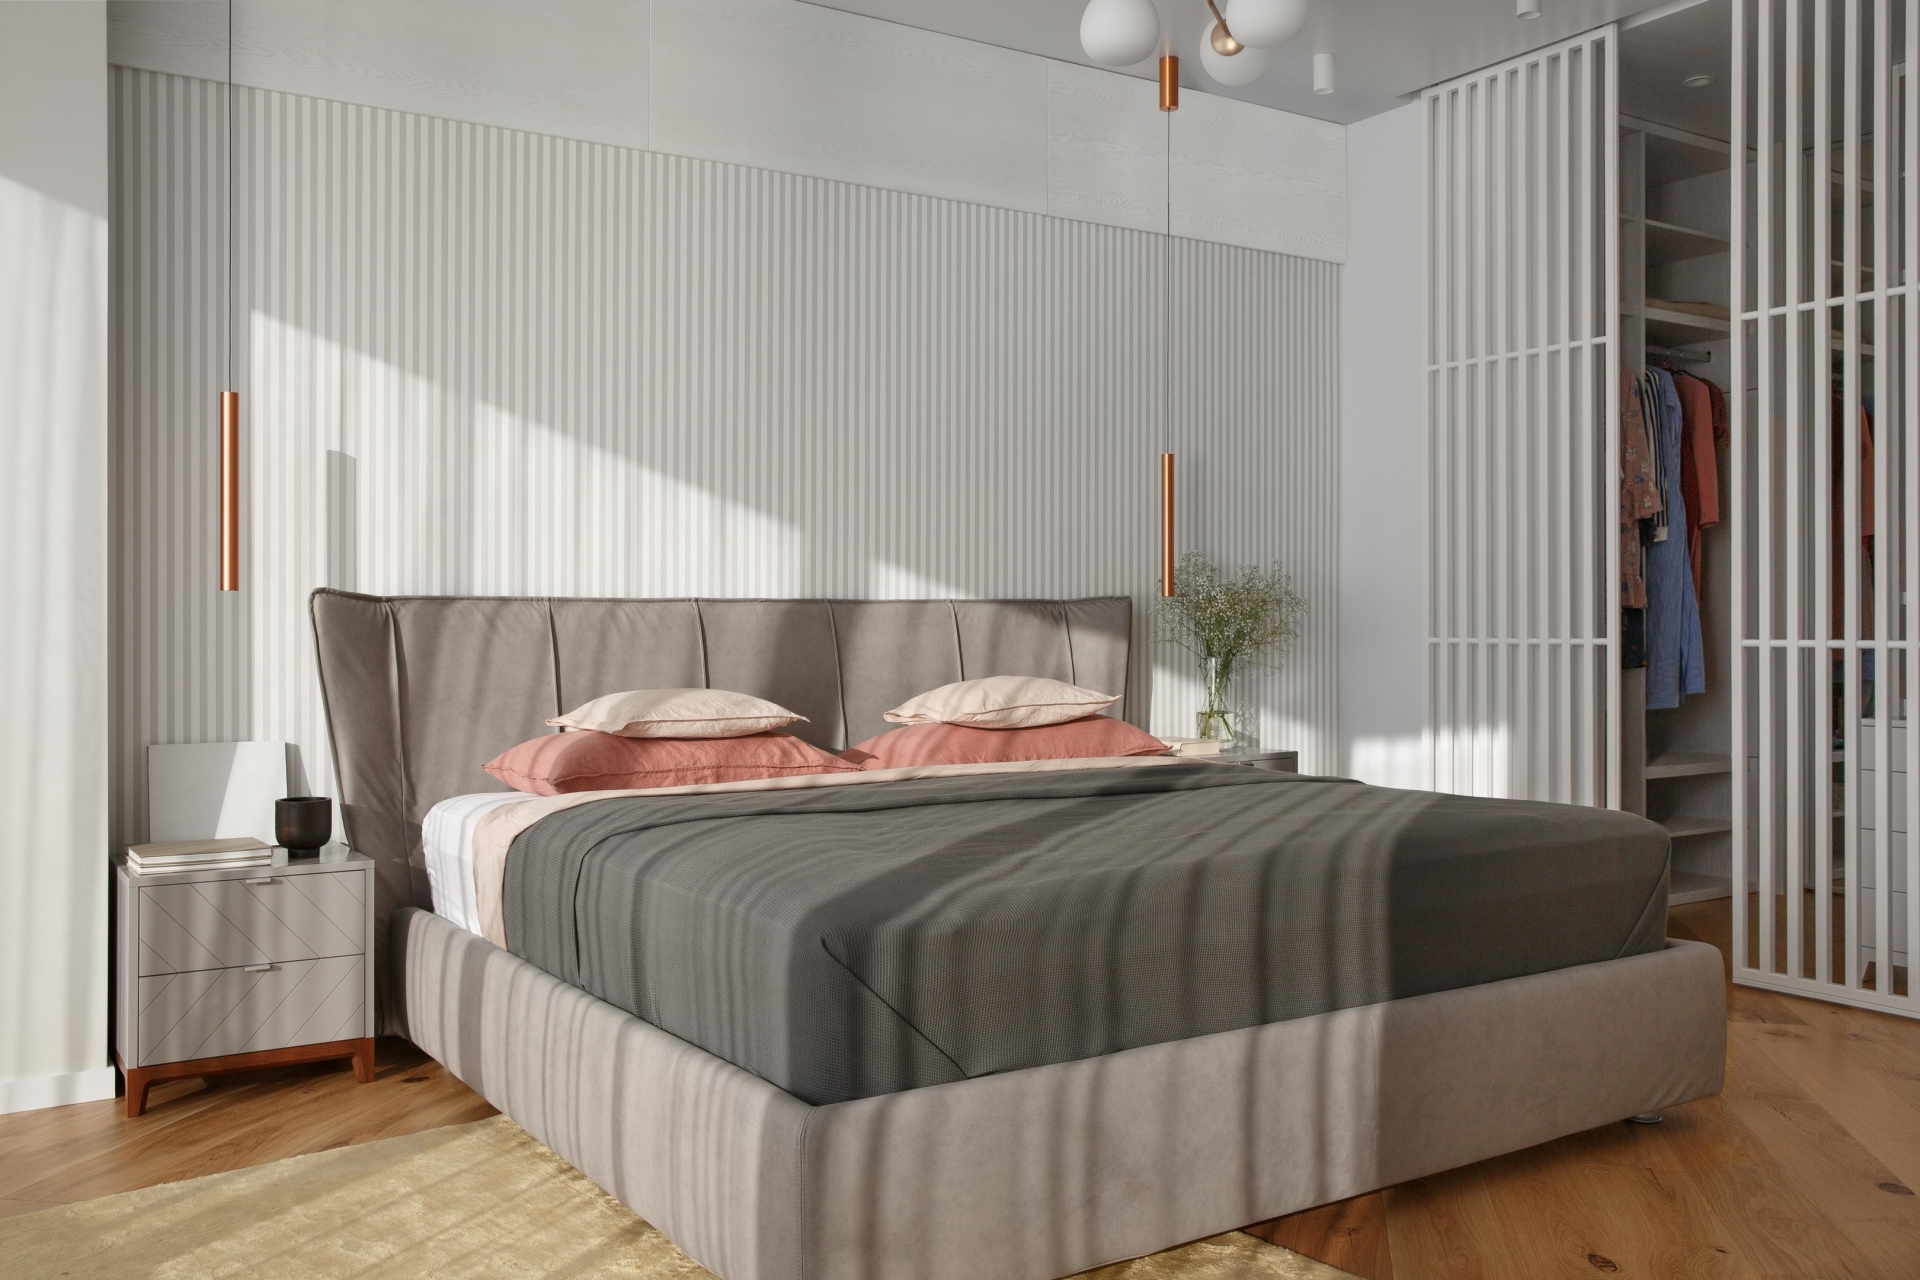 Vách ngăn gỗ sơn màu trắng được sử dụng để phân vùng giường ngủ với khu vực phòng thay quần áo. 